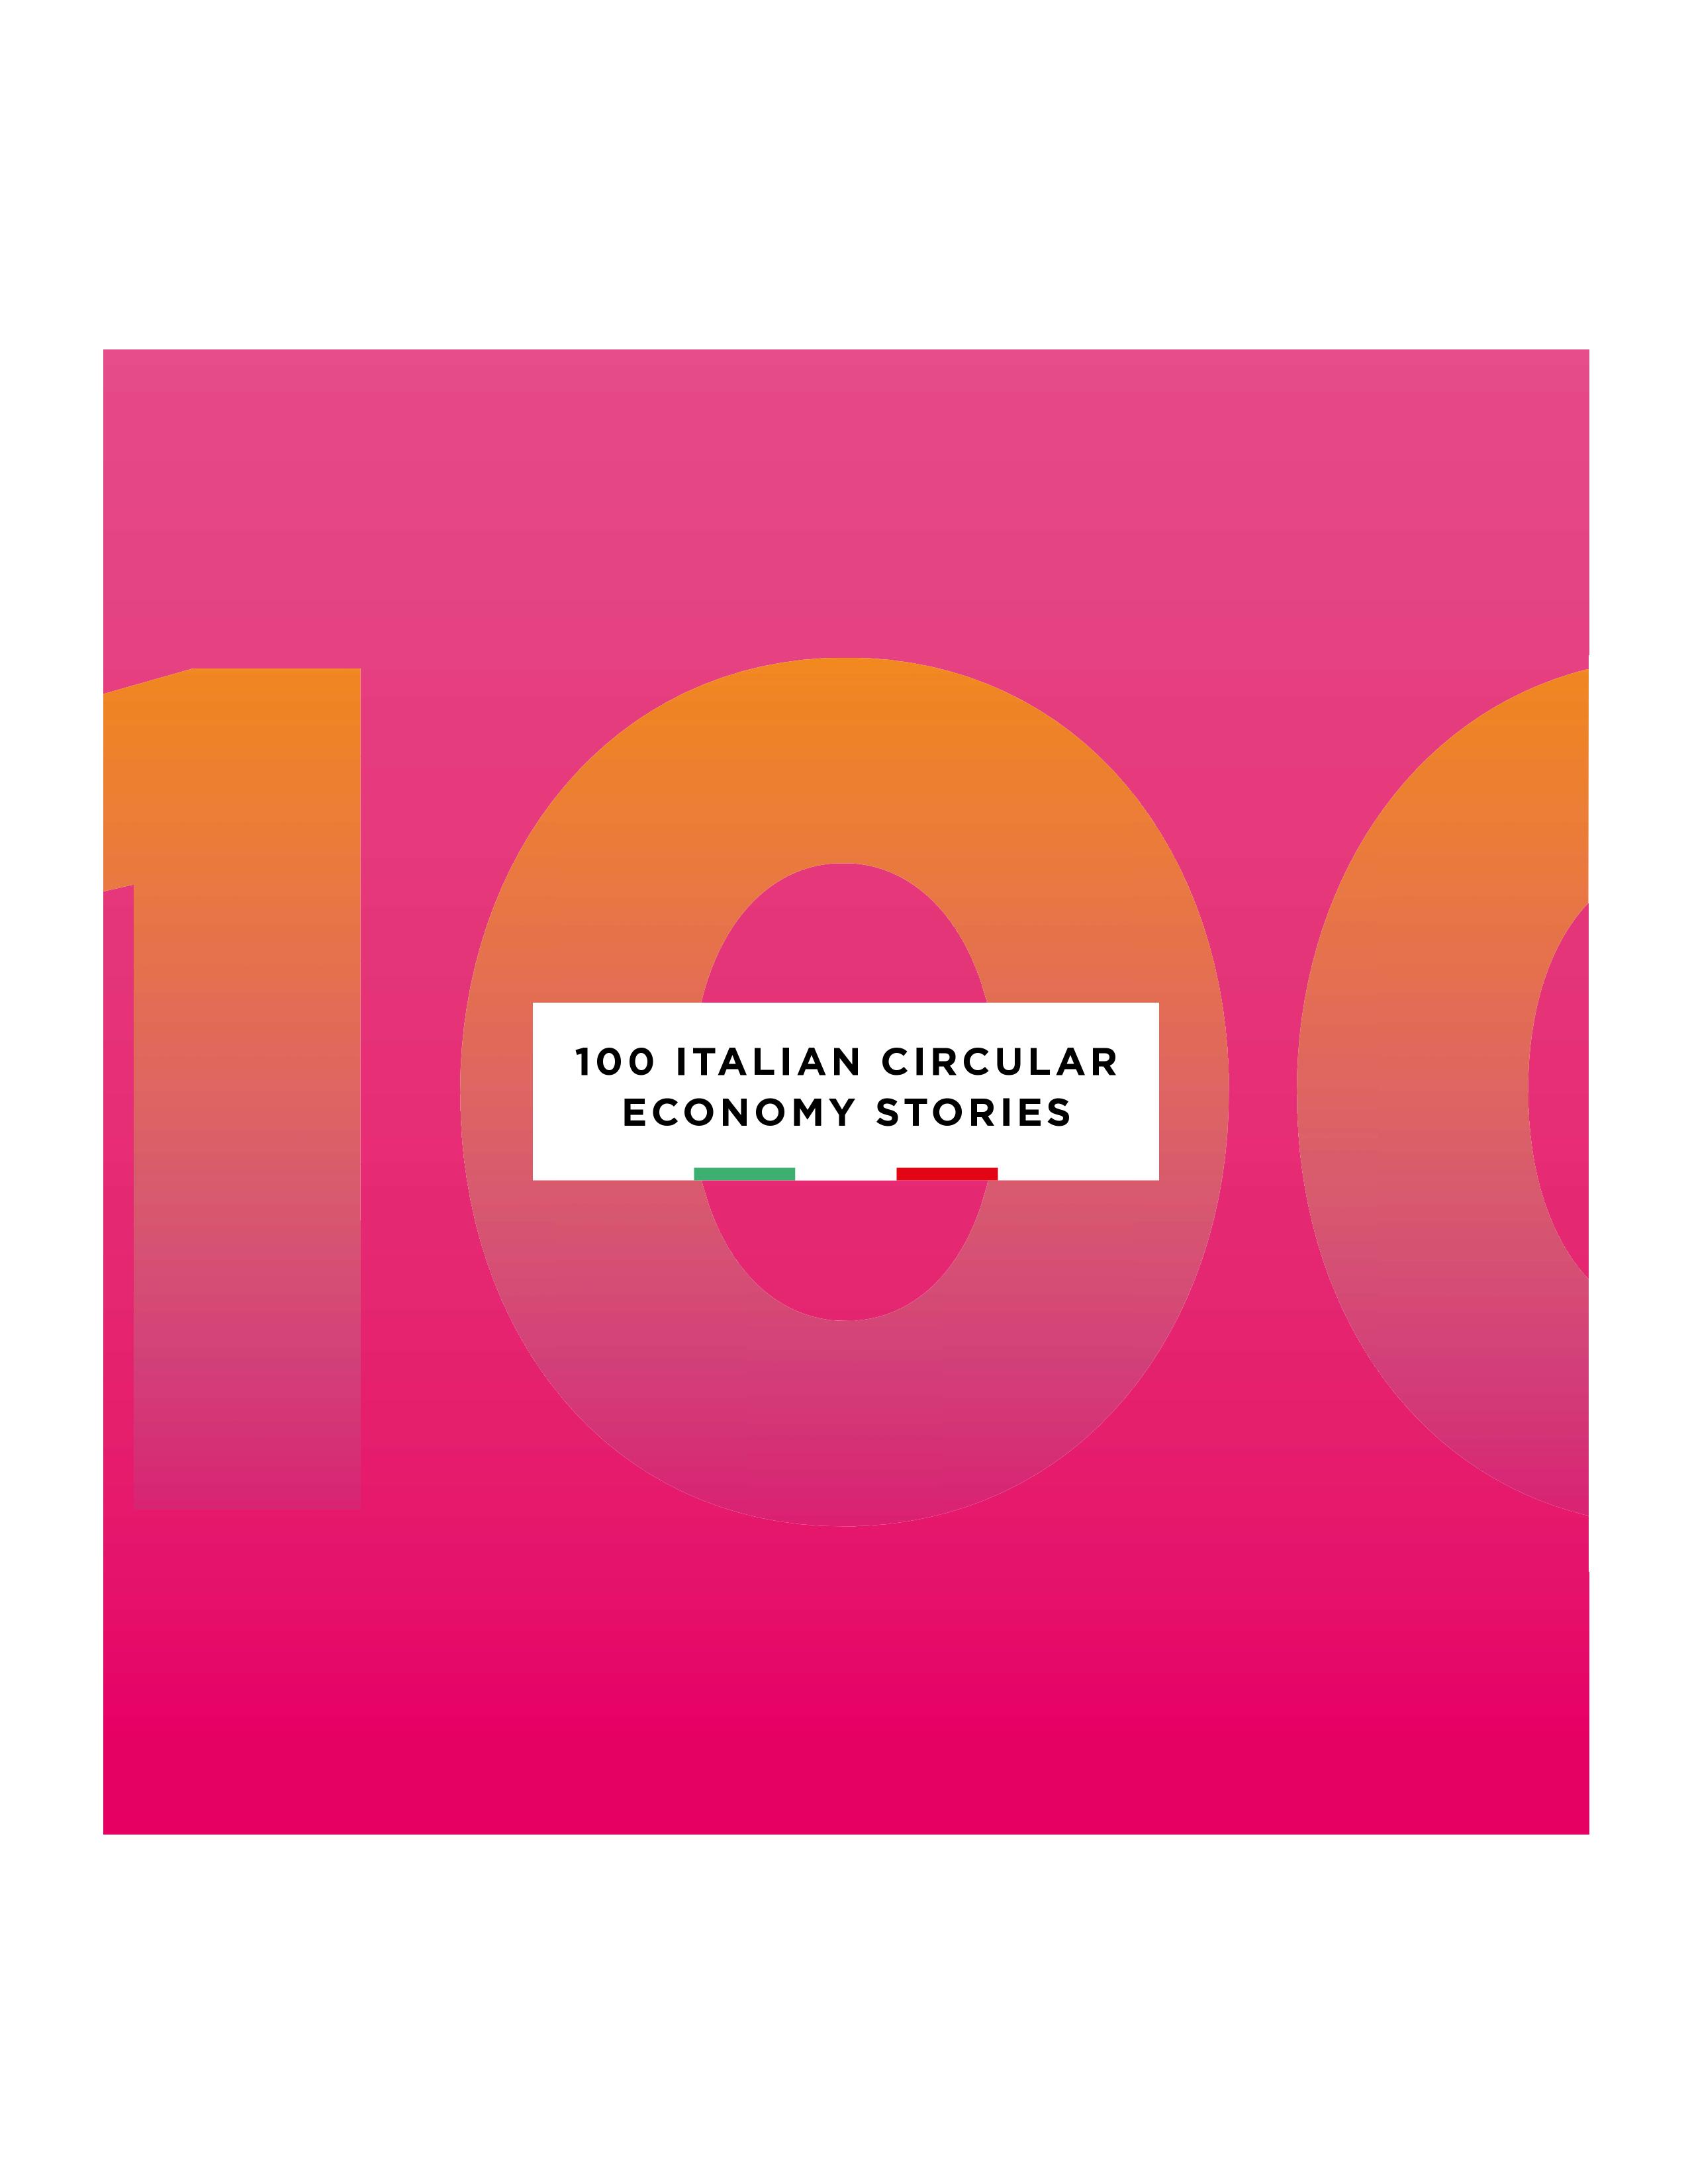 Enel e Fondazione Symbola presentano: “100 Italian circular economy stories”